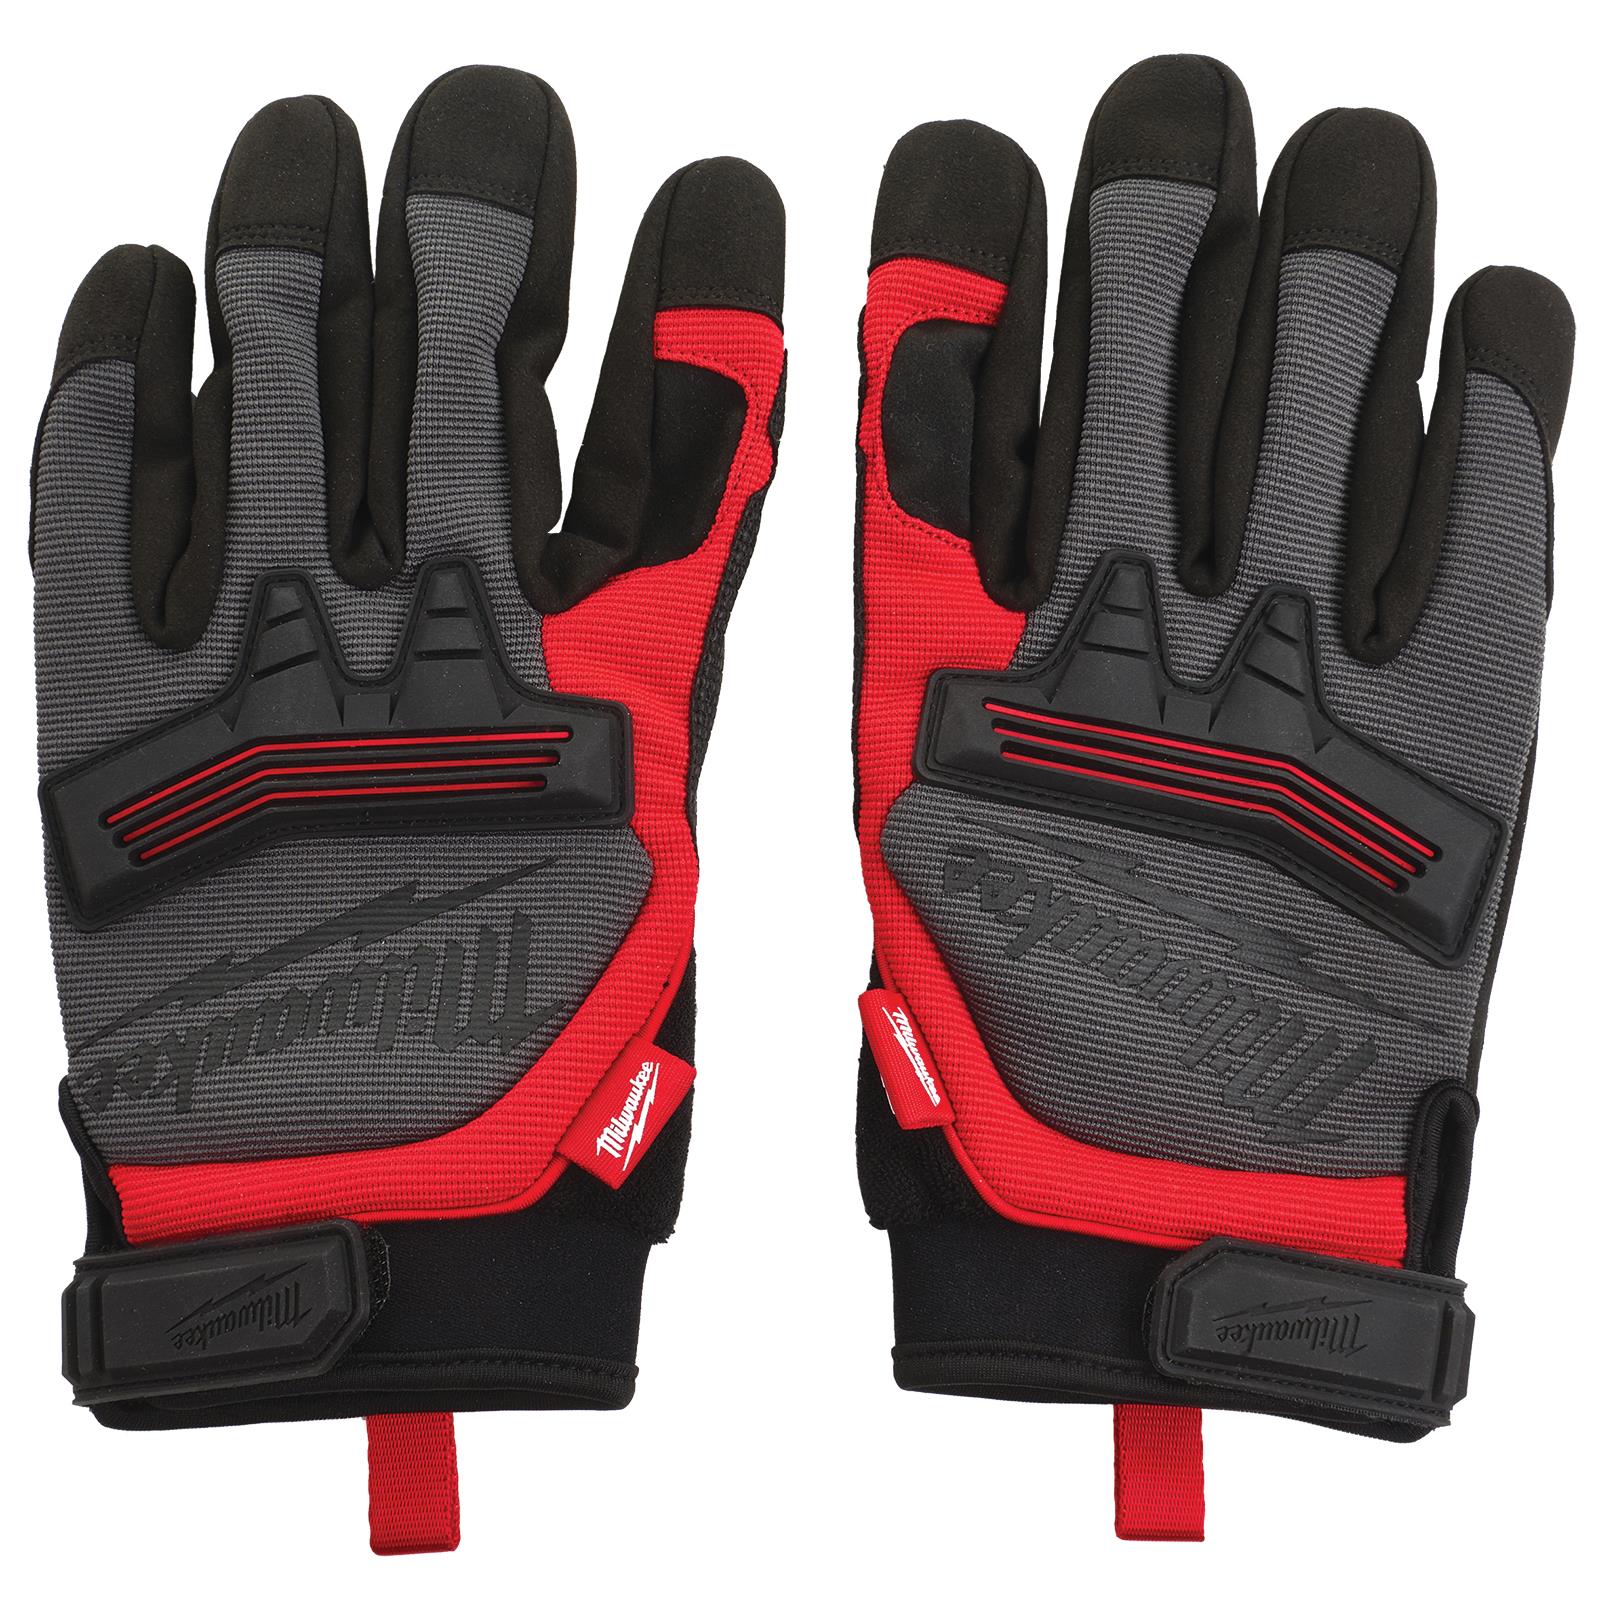 Milwaukee Safety Gloves Demolition Glove Size 10 / XL Extra Large